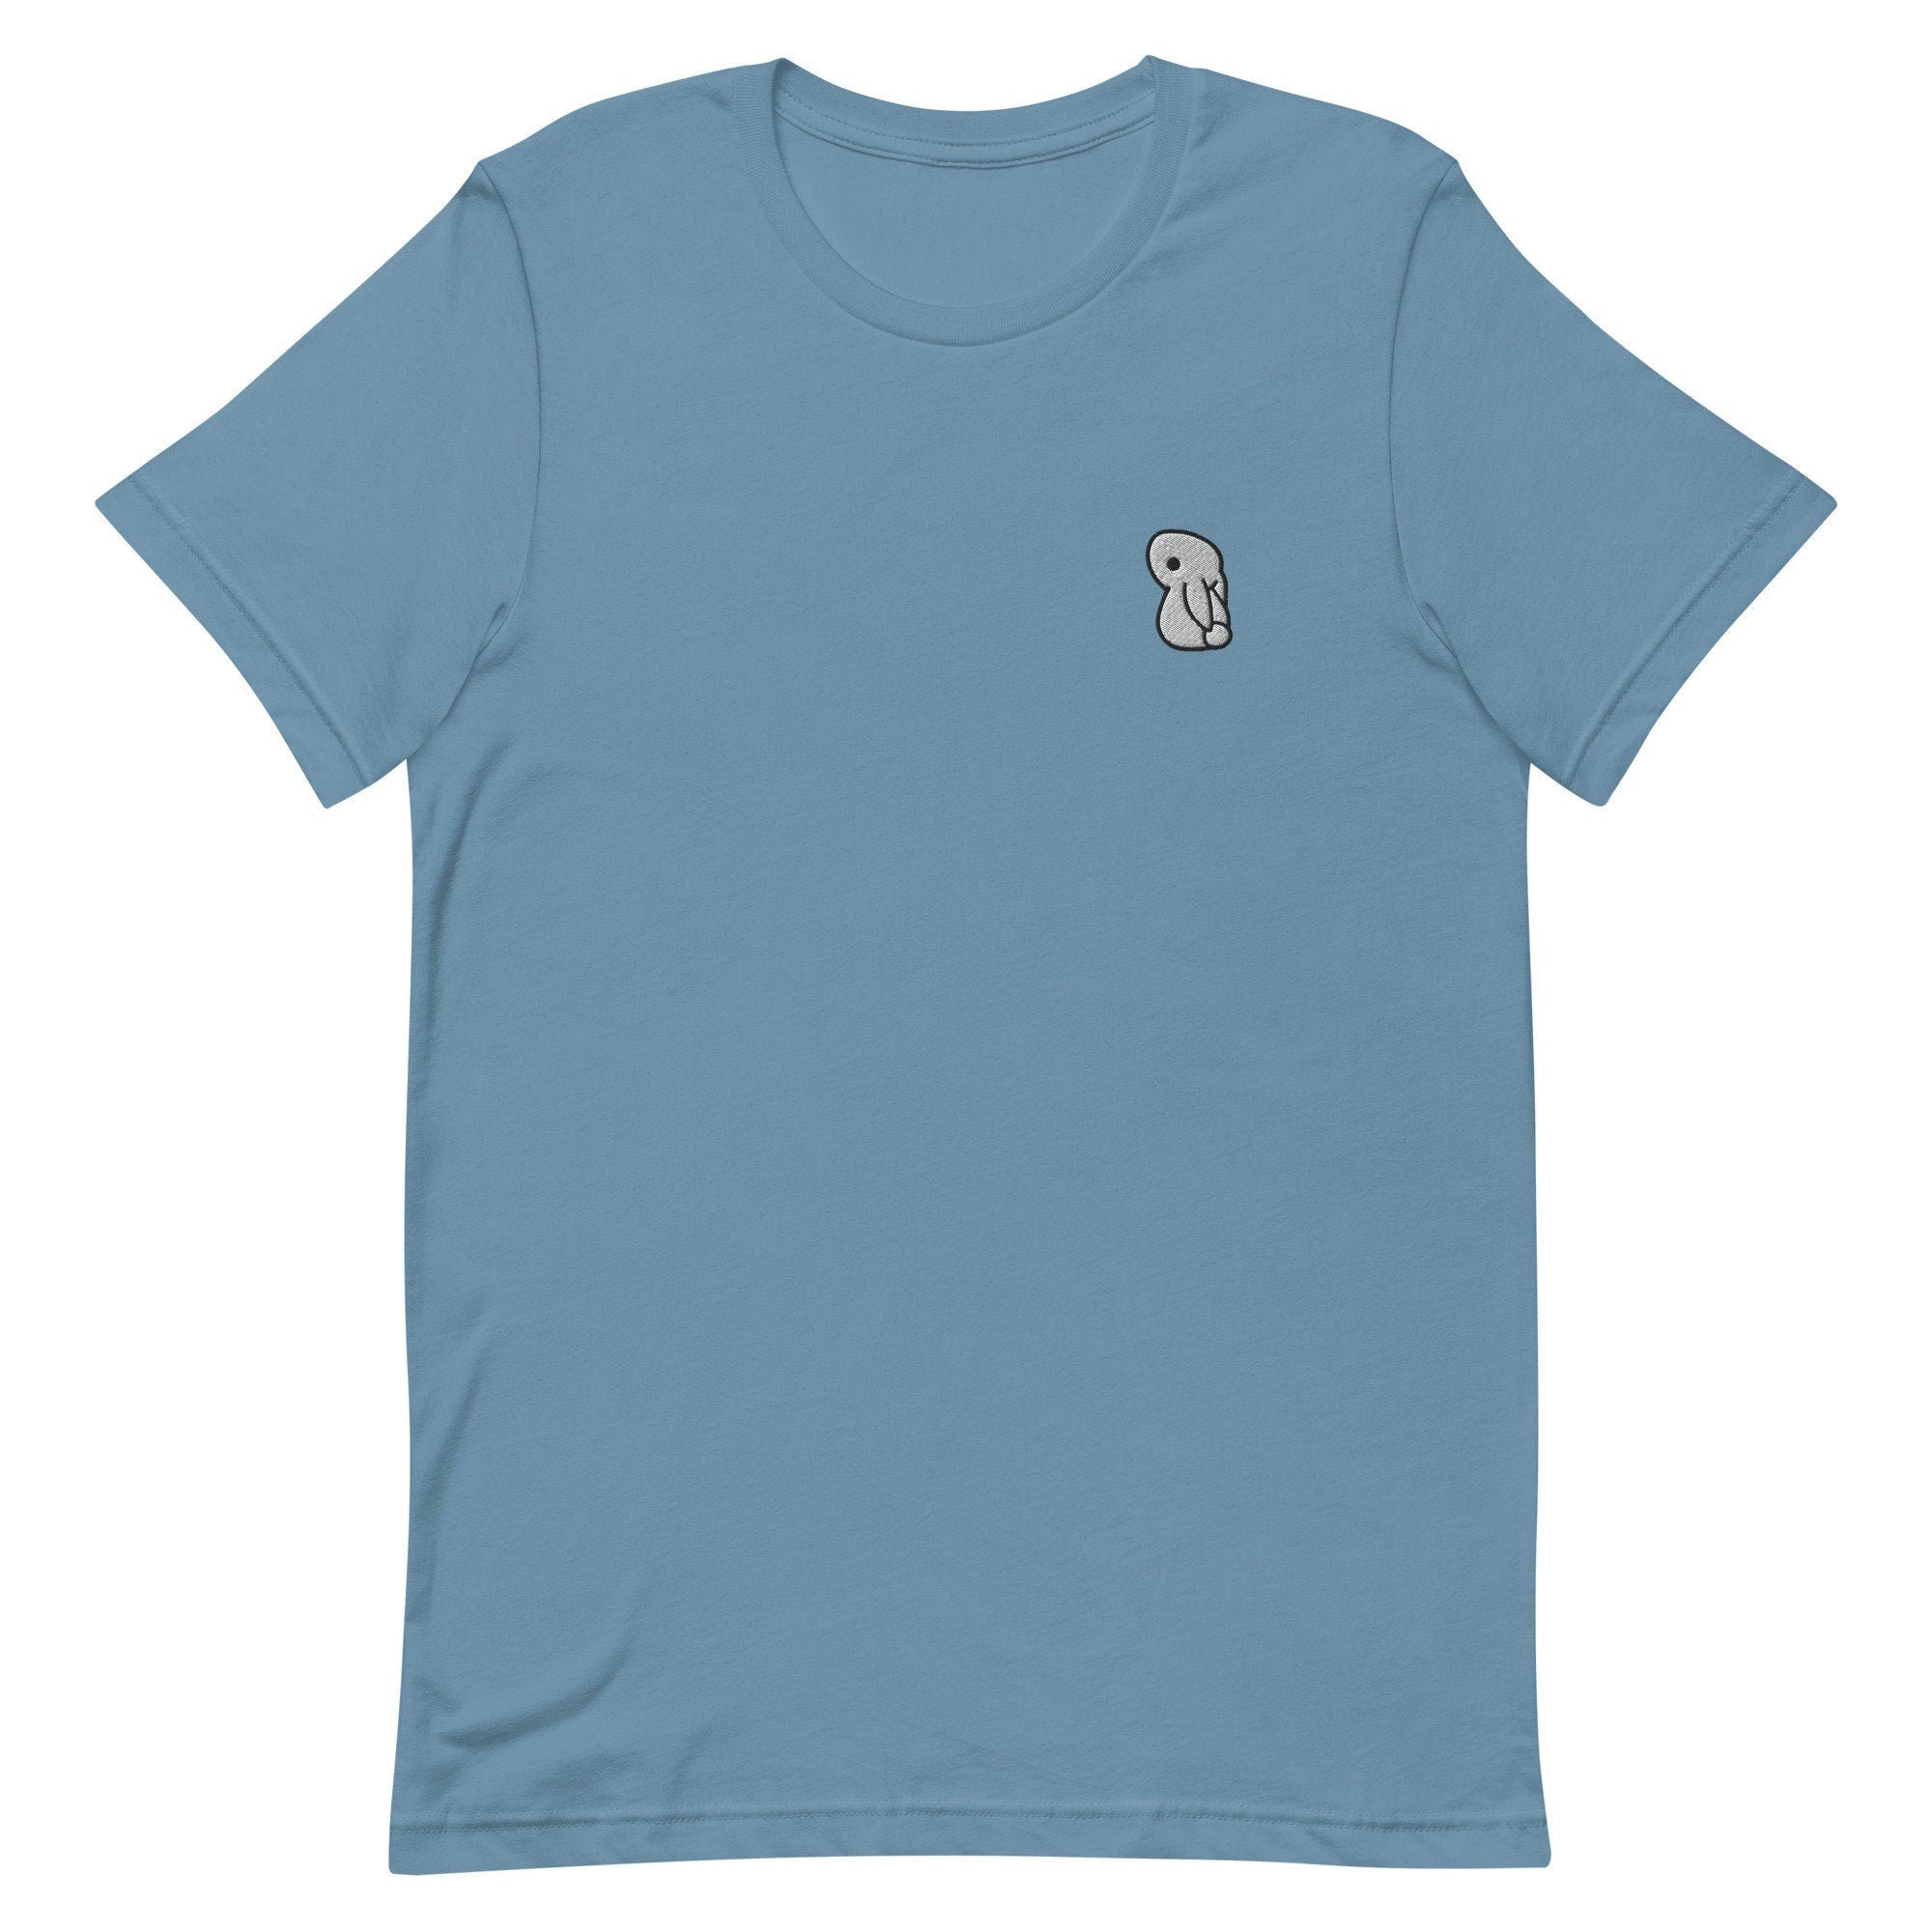 Bunny Rabbit Premium Men's T-Shirt, Embroidered Men's T-Shirt Gift for Boyfriend, Men's Short Sleeve Shirt - Multiple Colors